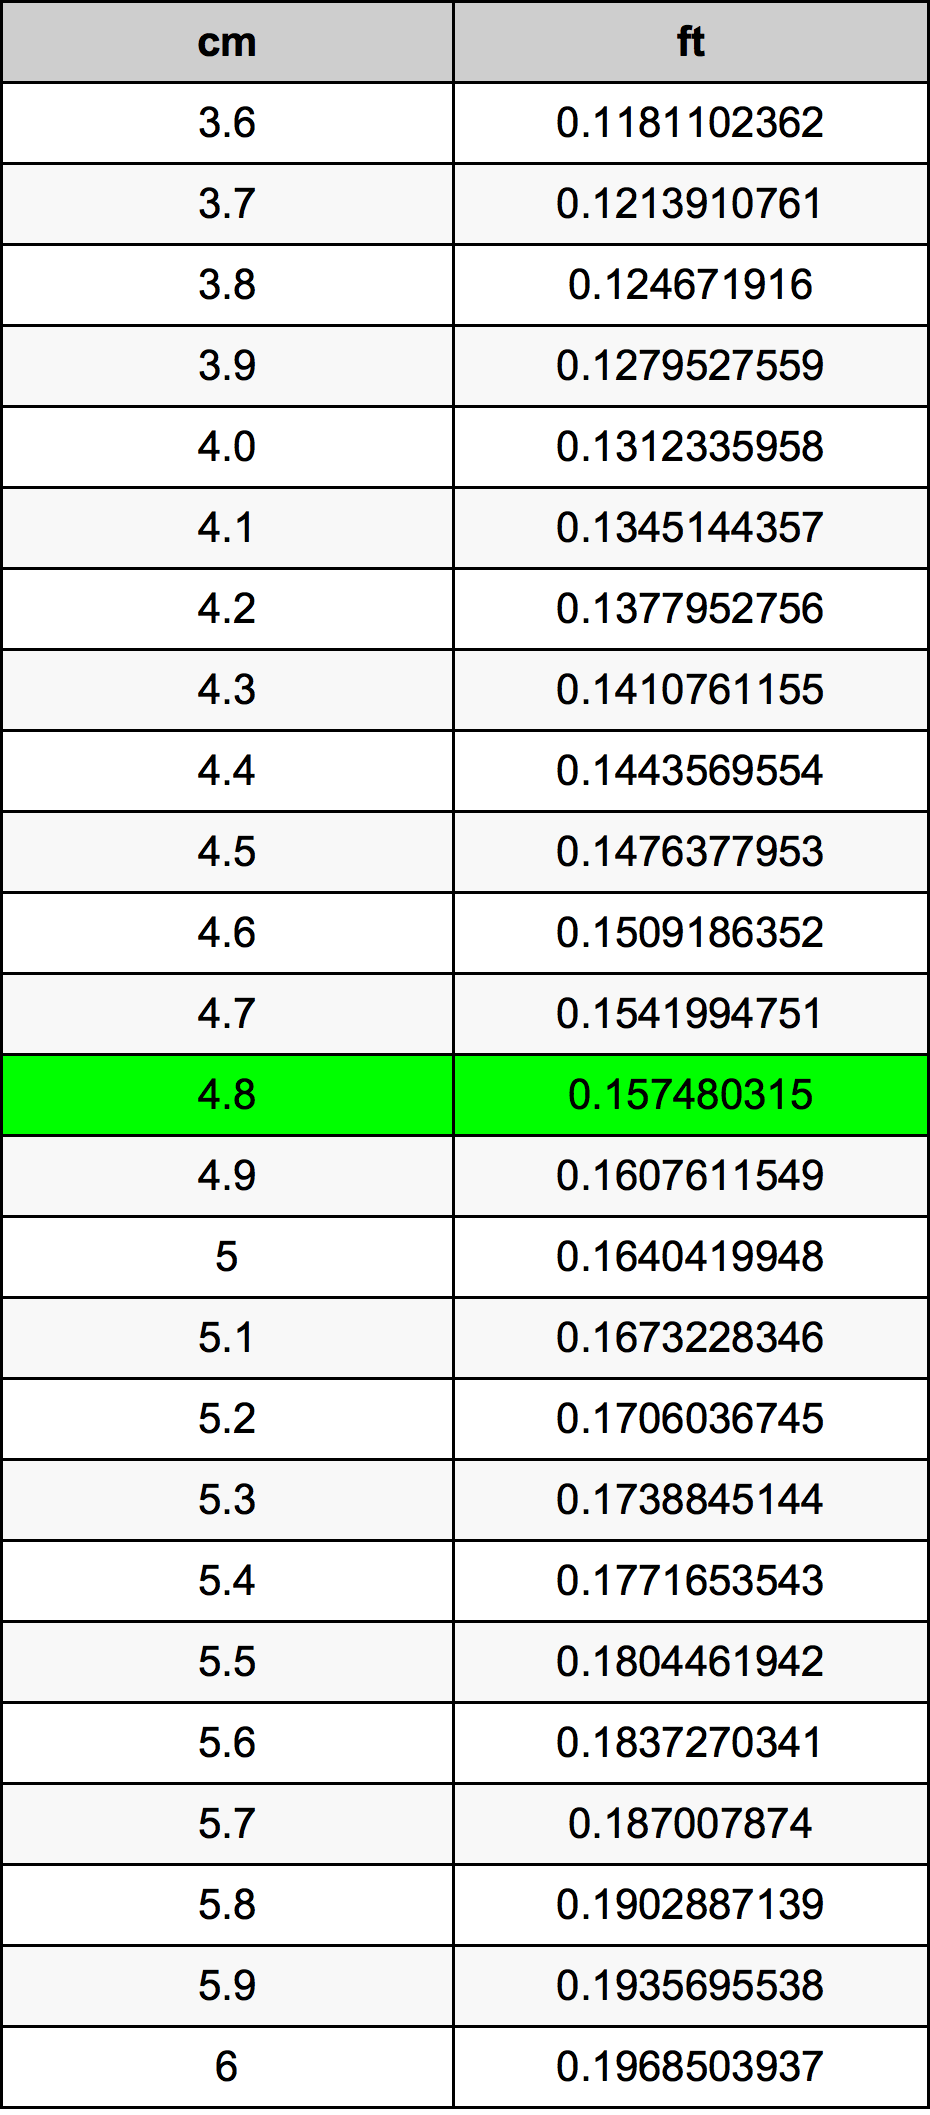 4.8 Centiméter átszámítási táblázat